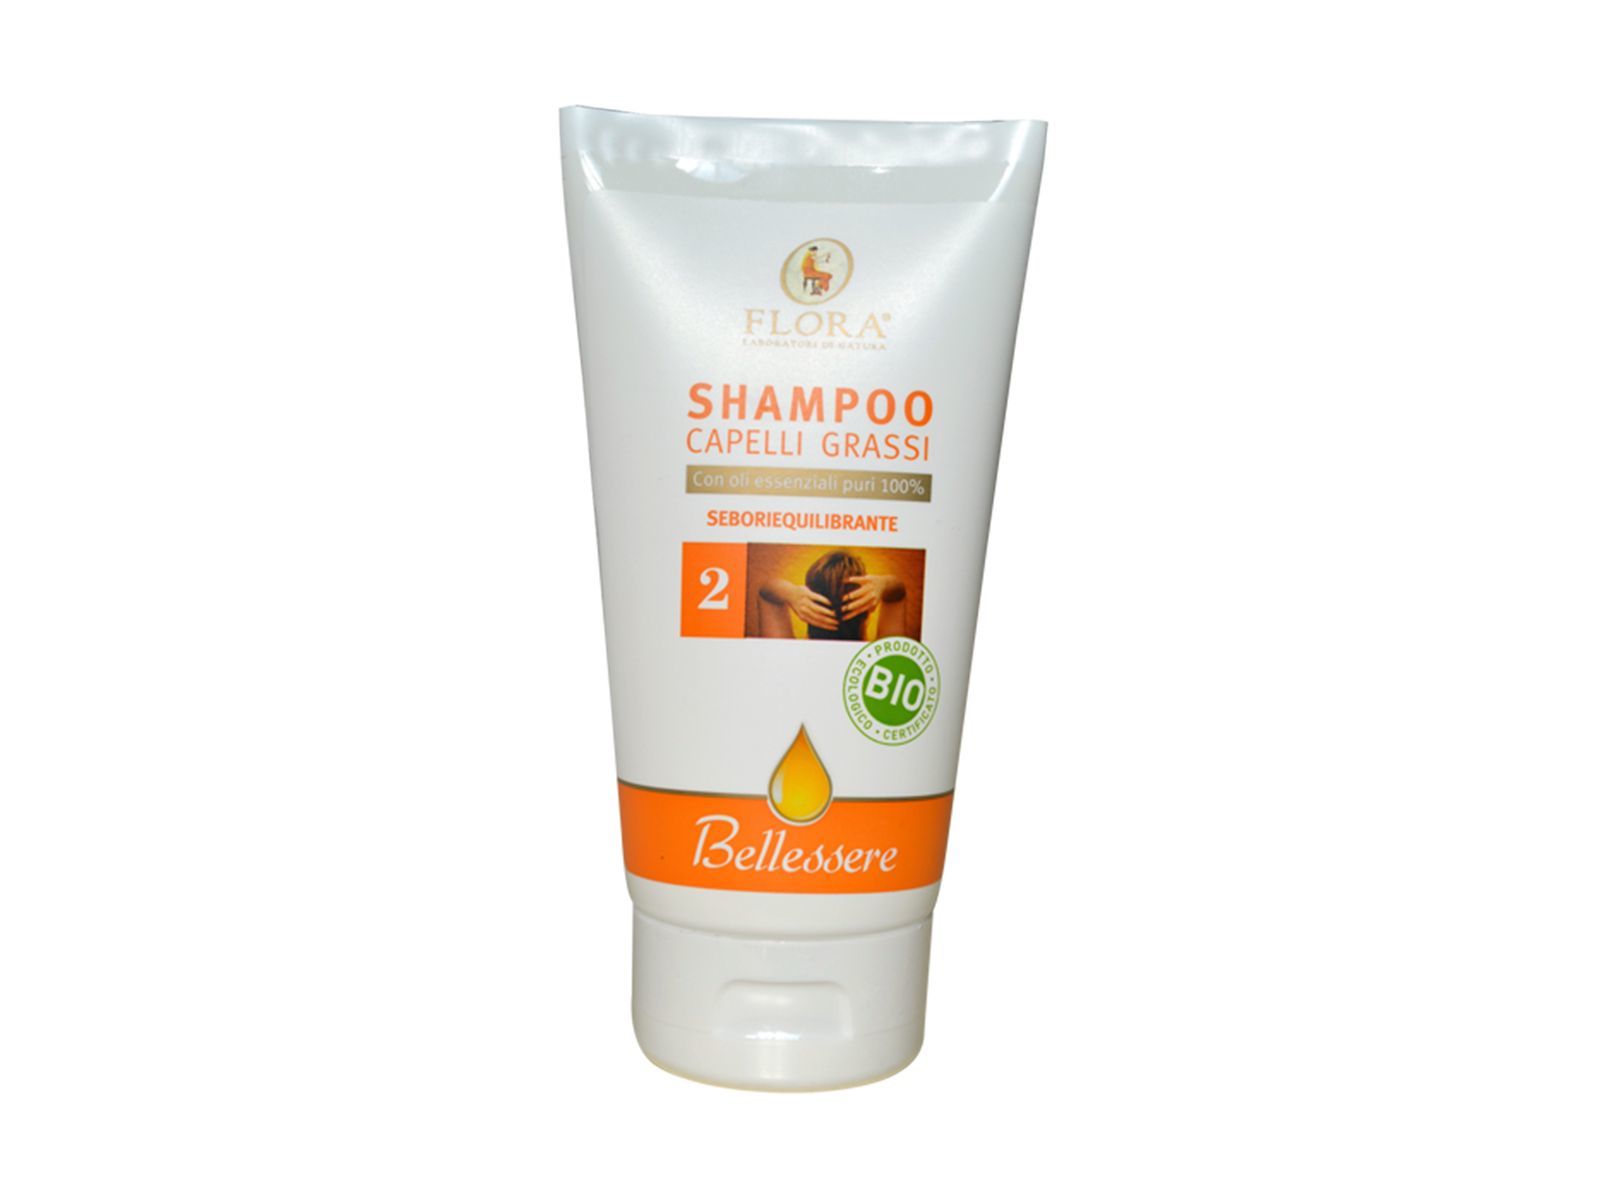 Shampoo capelli grassi - Contenuto 150 ml